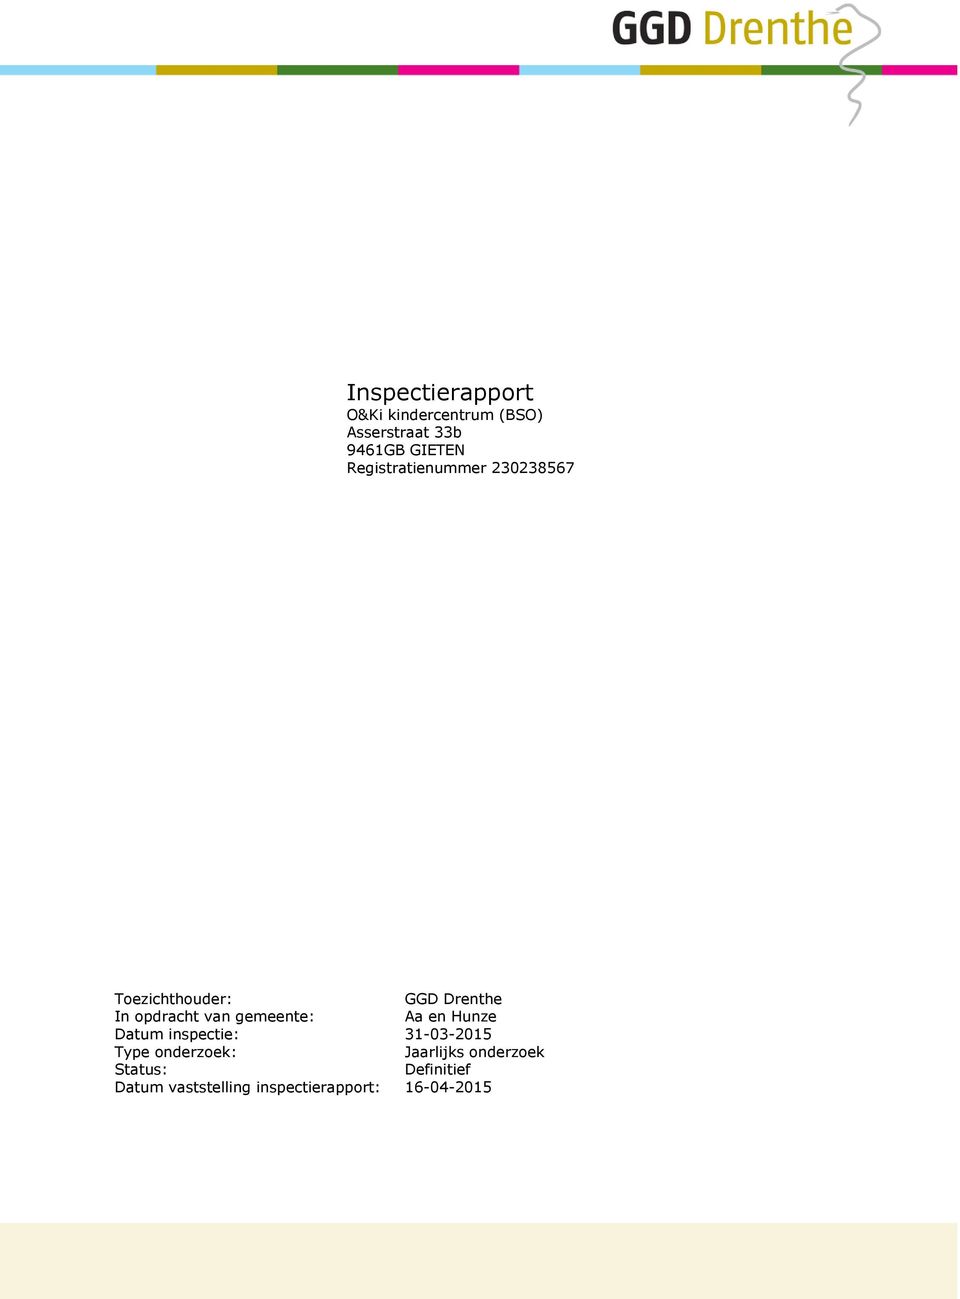 gemeente: Aa en Hunze Datum inspectie: 31-03-2015 Type onderzoek :